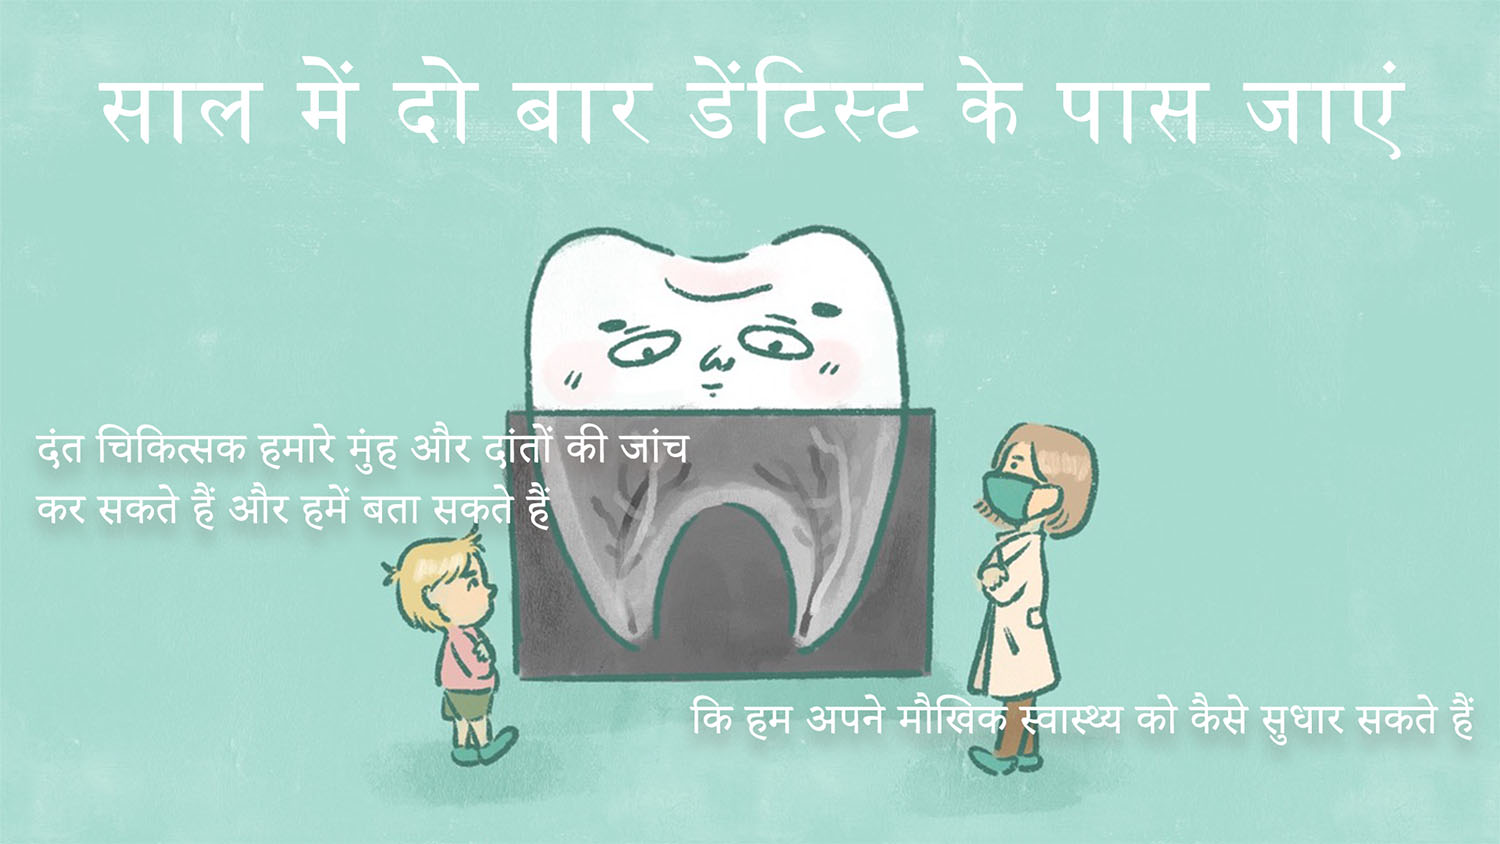 दंत चिकित्सक द्विवार्षिक यात्रा